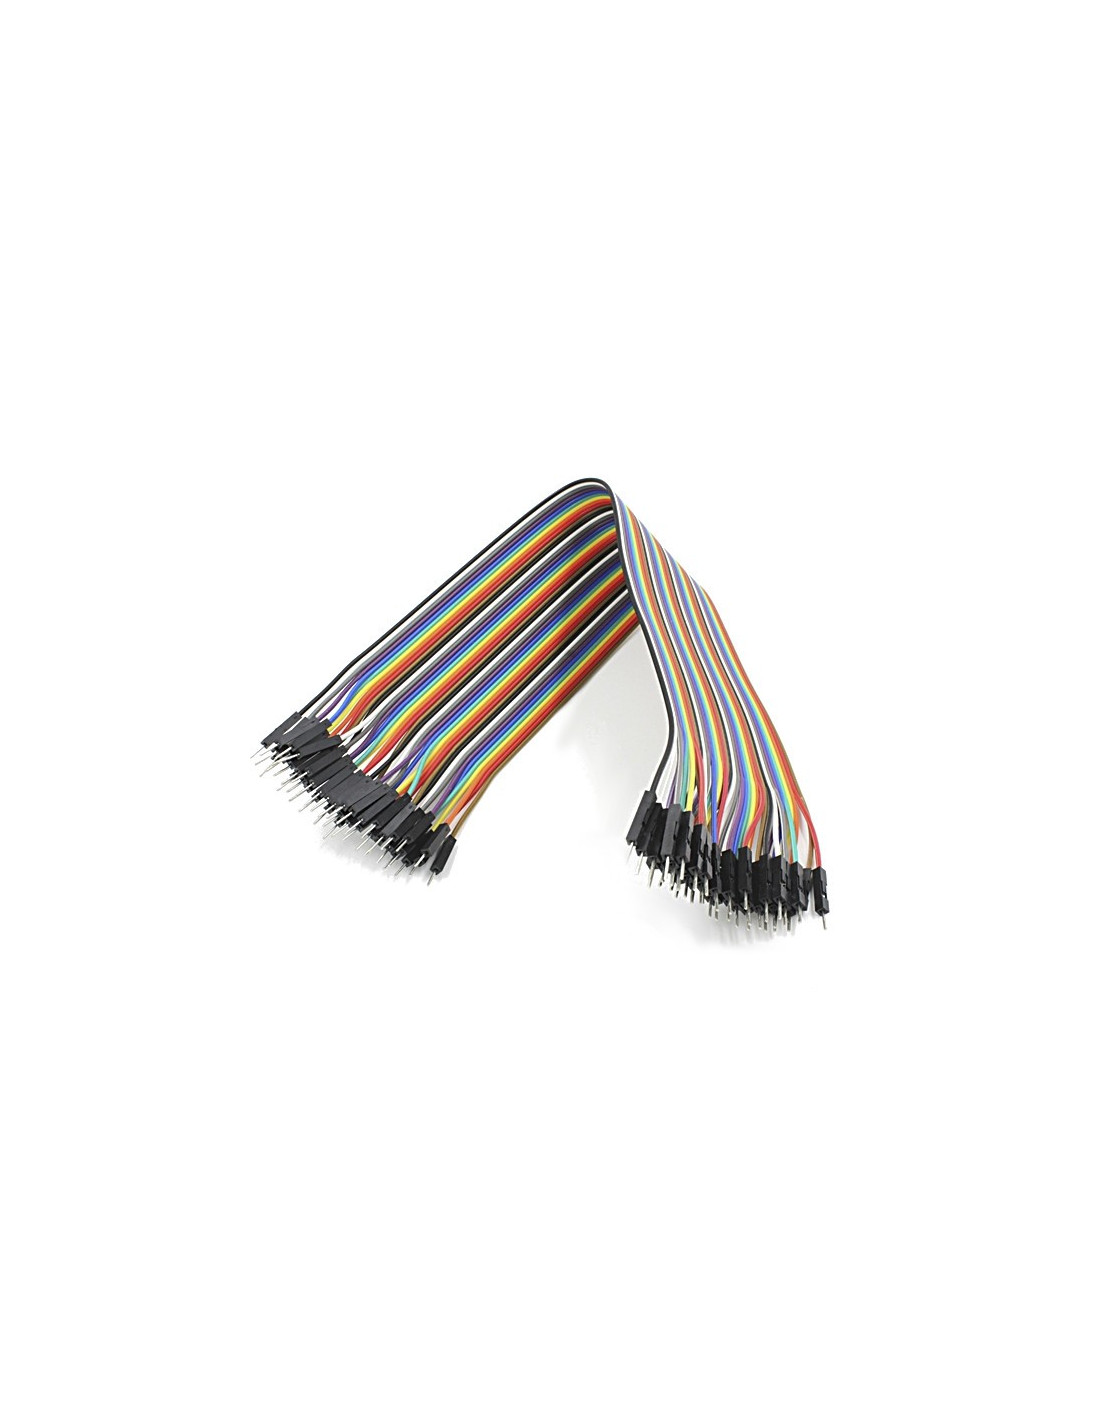 Cables dupont 40cm, M-M (40uds)